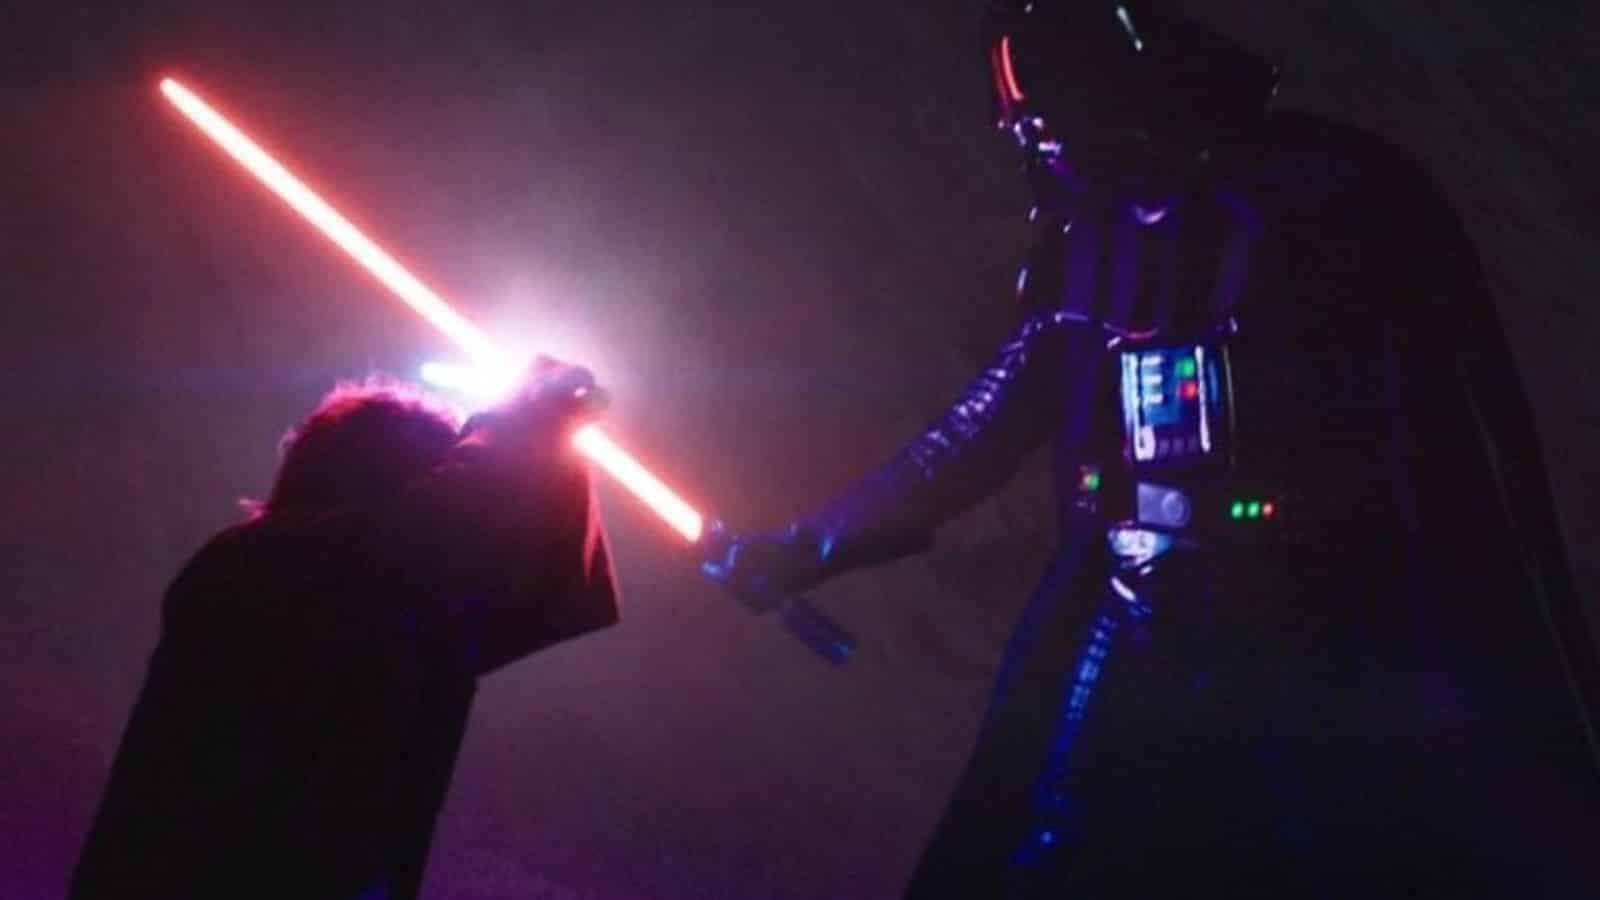 An image of Kenobi and Darth Vader